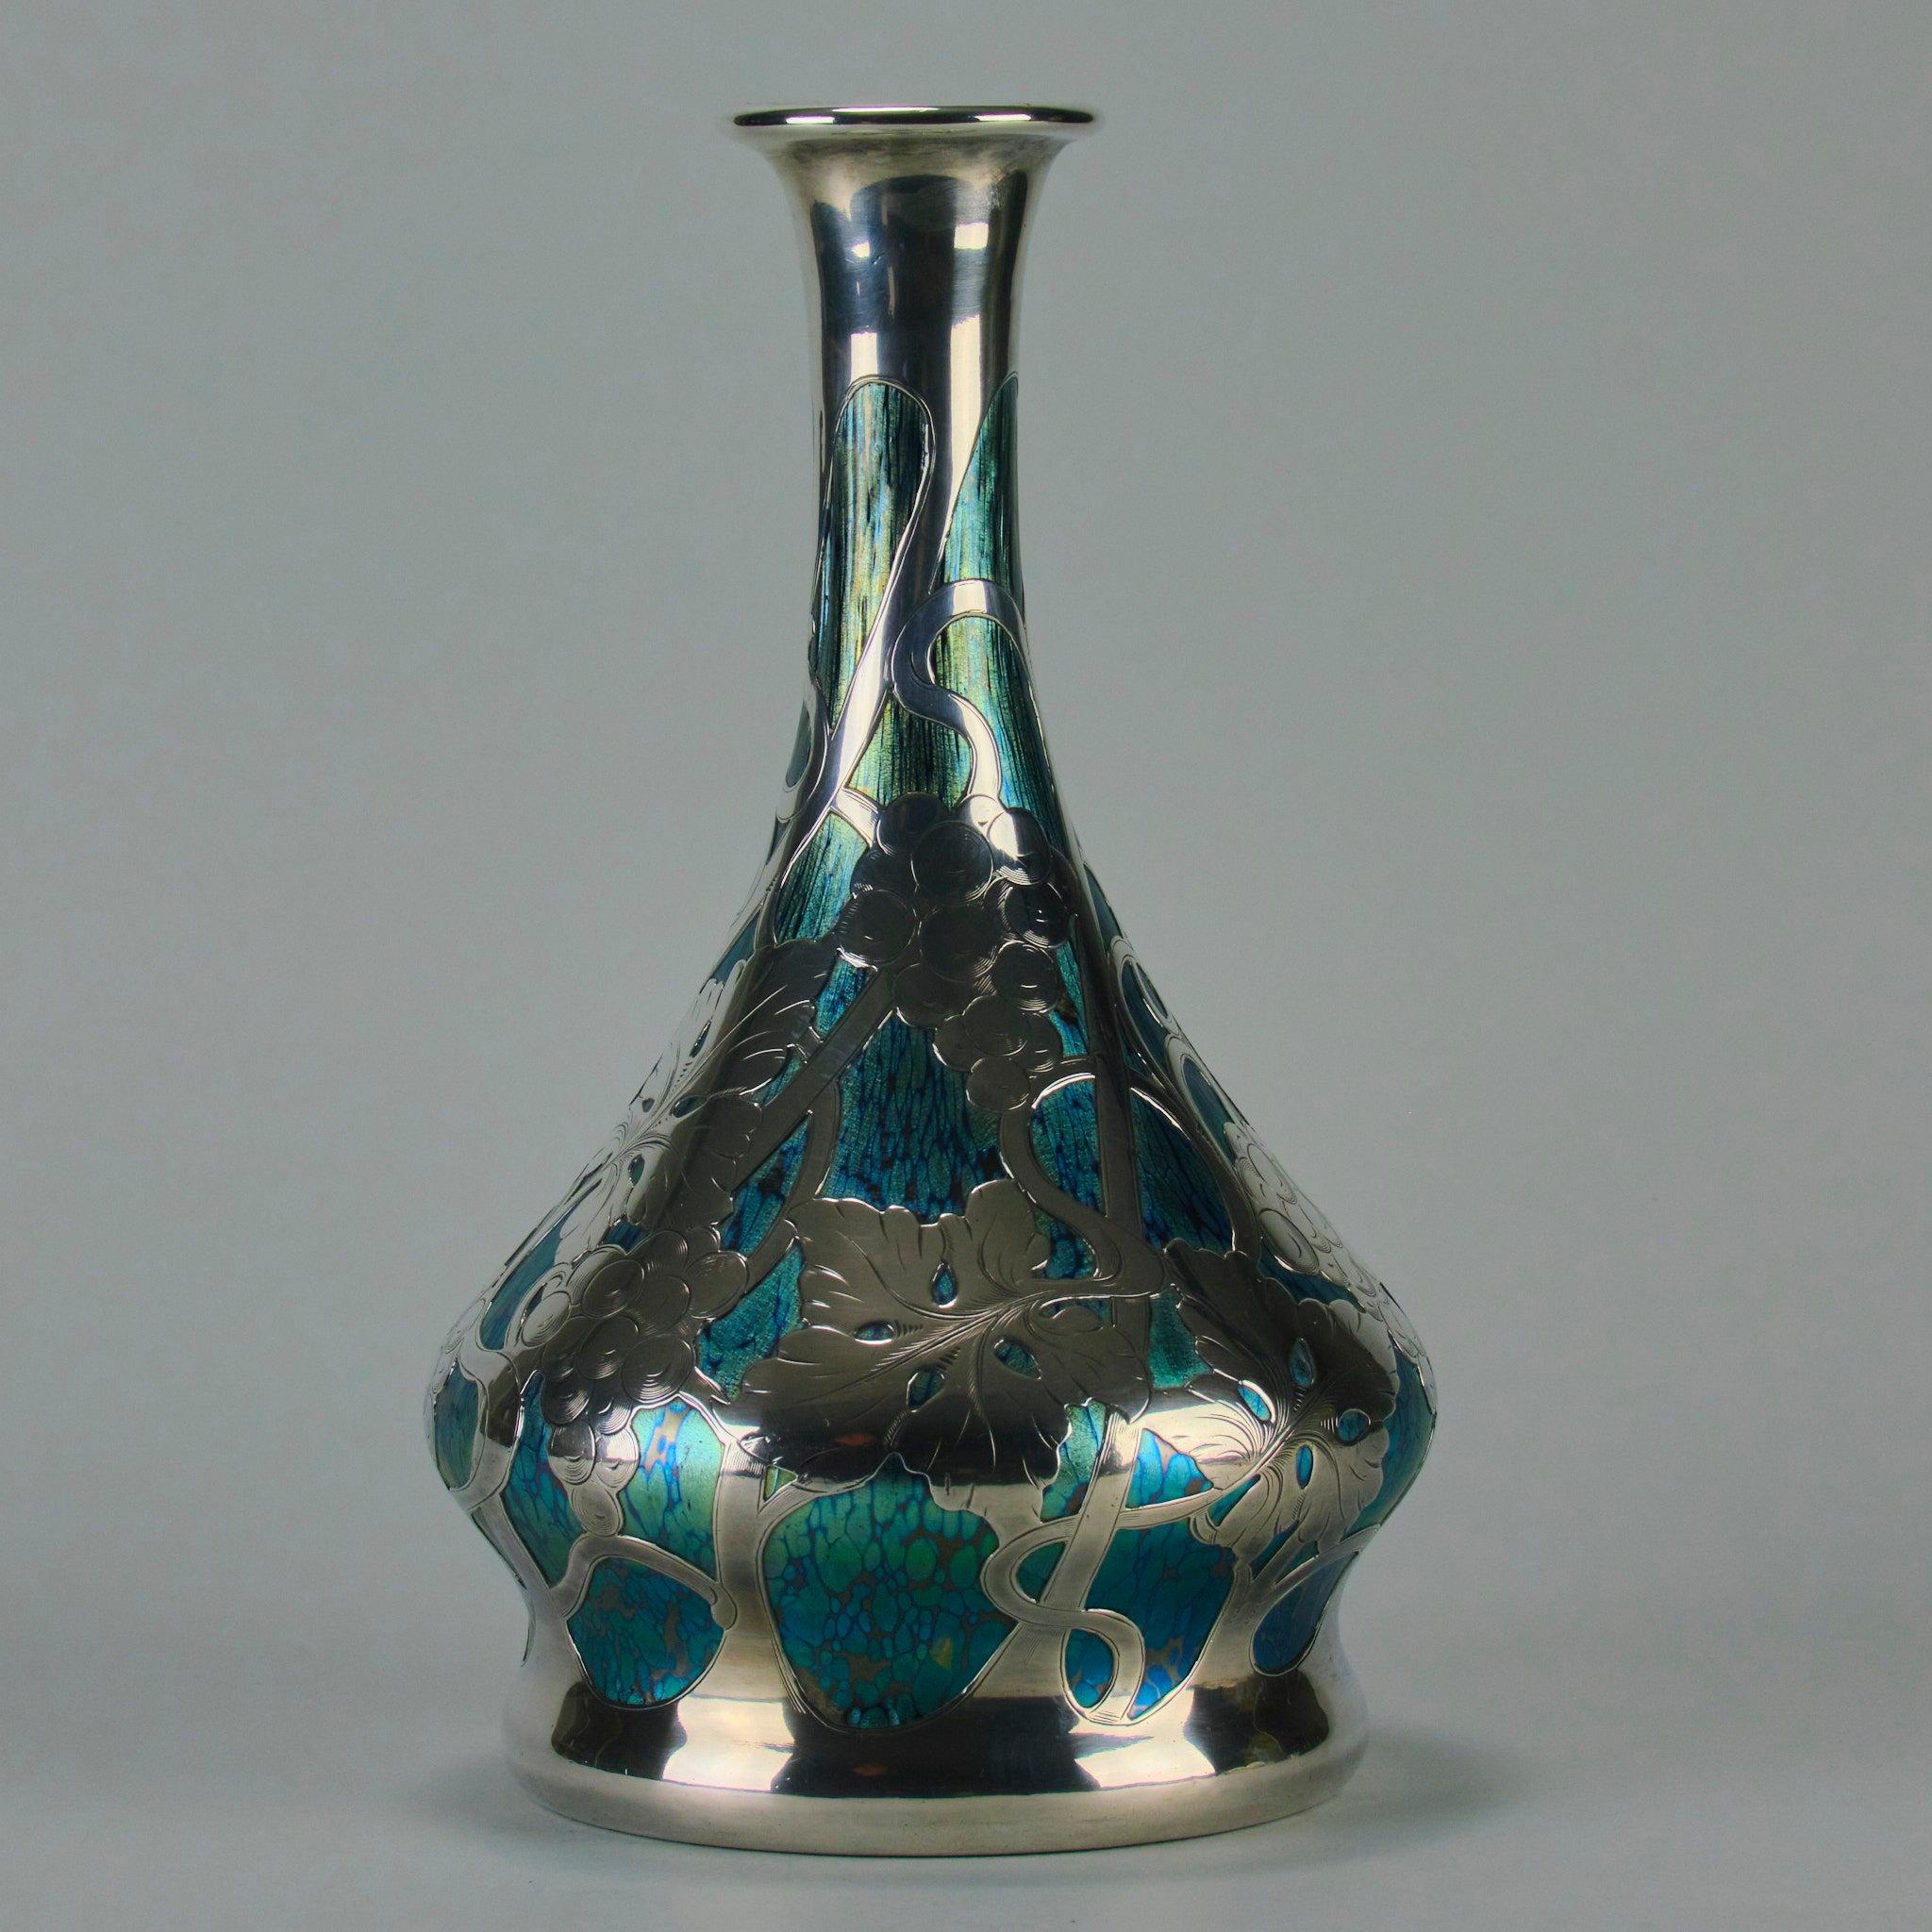 Early 20th Century “Cobalt Papillon Vase” Art Nouveau Glass Vase by the Loetz Glassworks